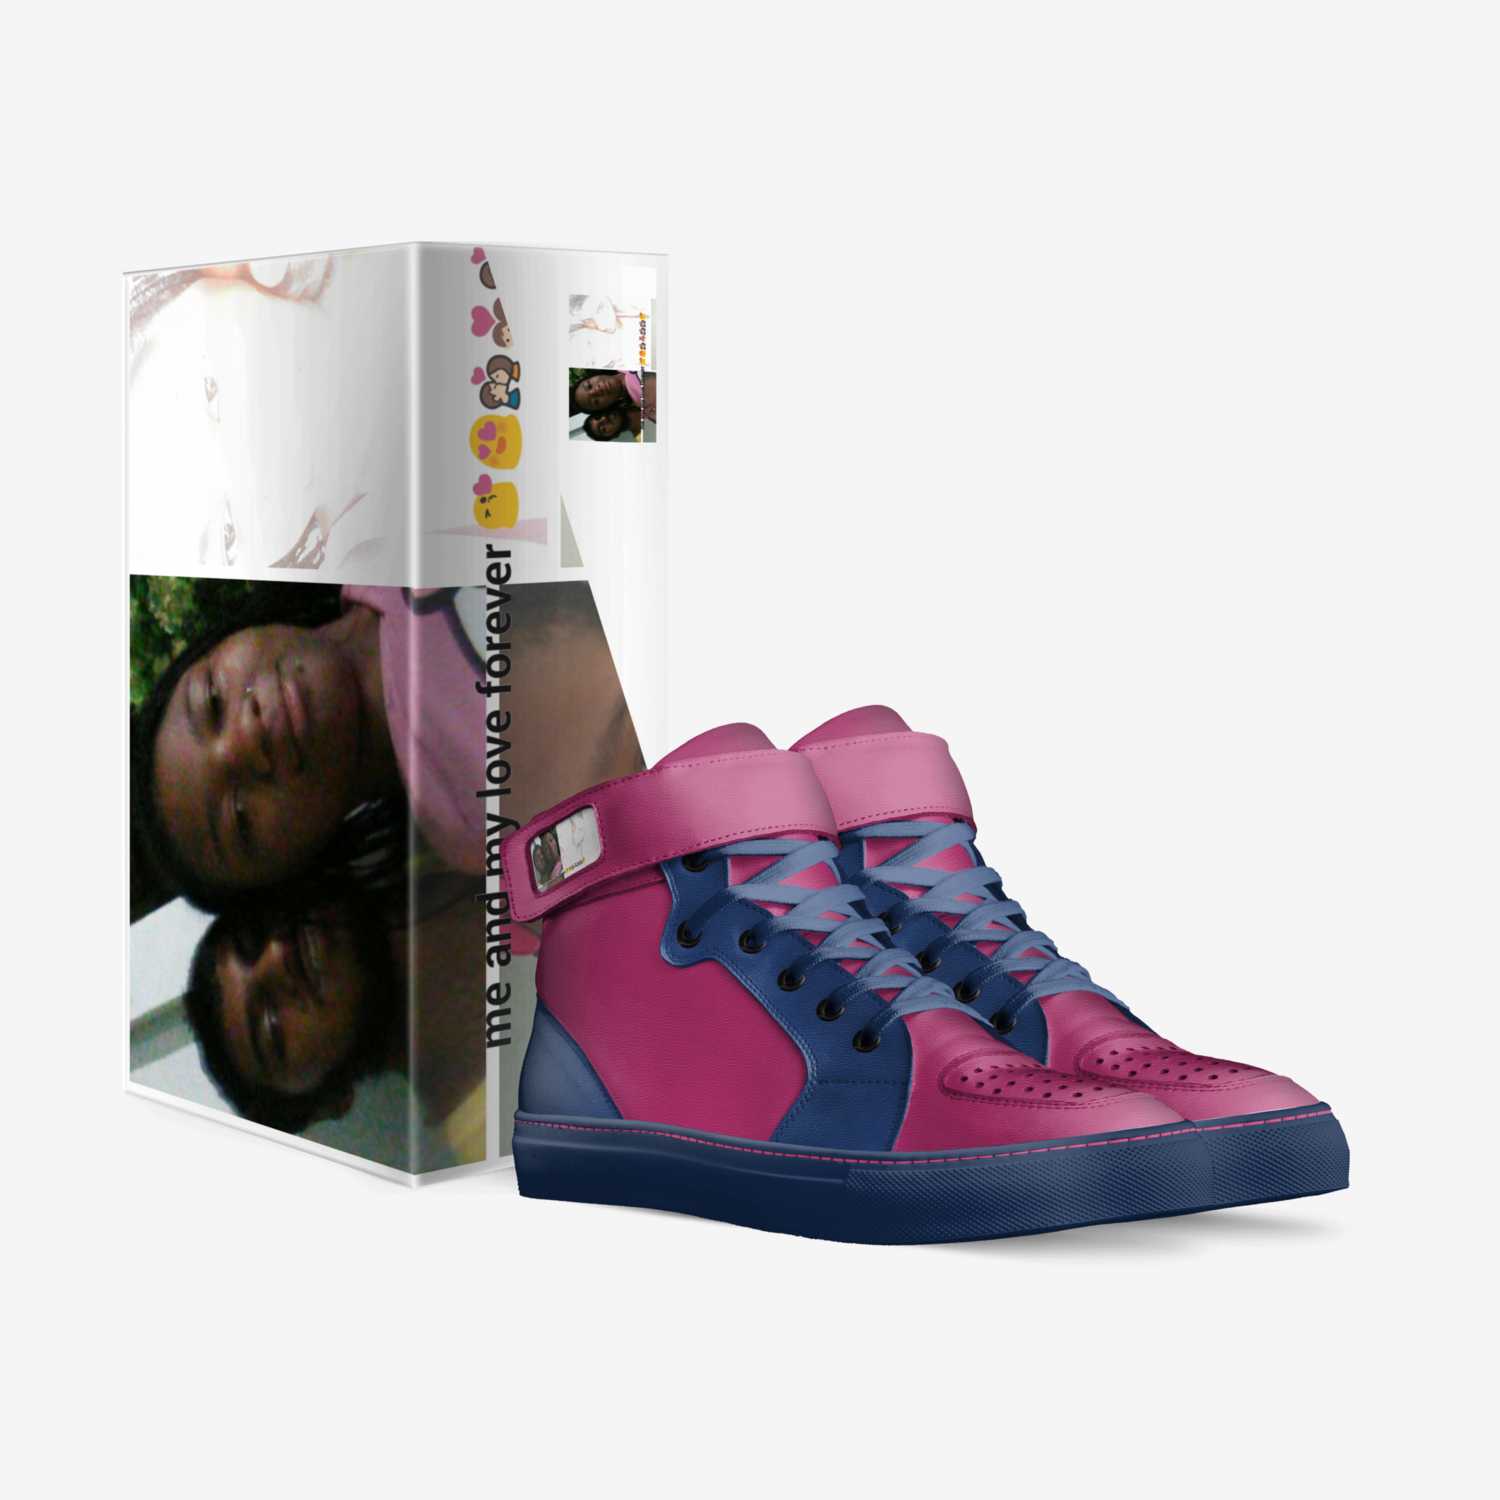 Ieshaboo custom made in Italy shoes by Iesha Nicole Kincaid | Box view